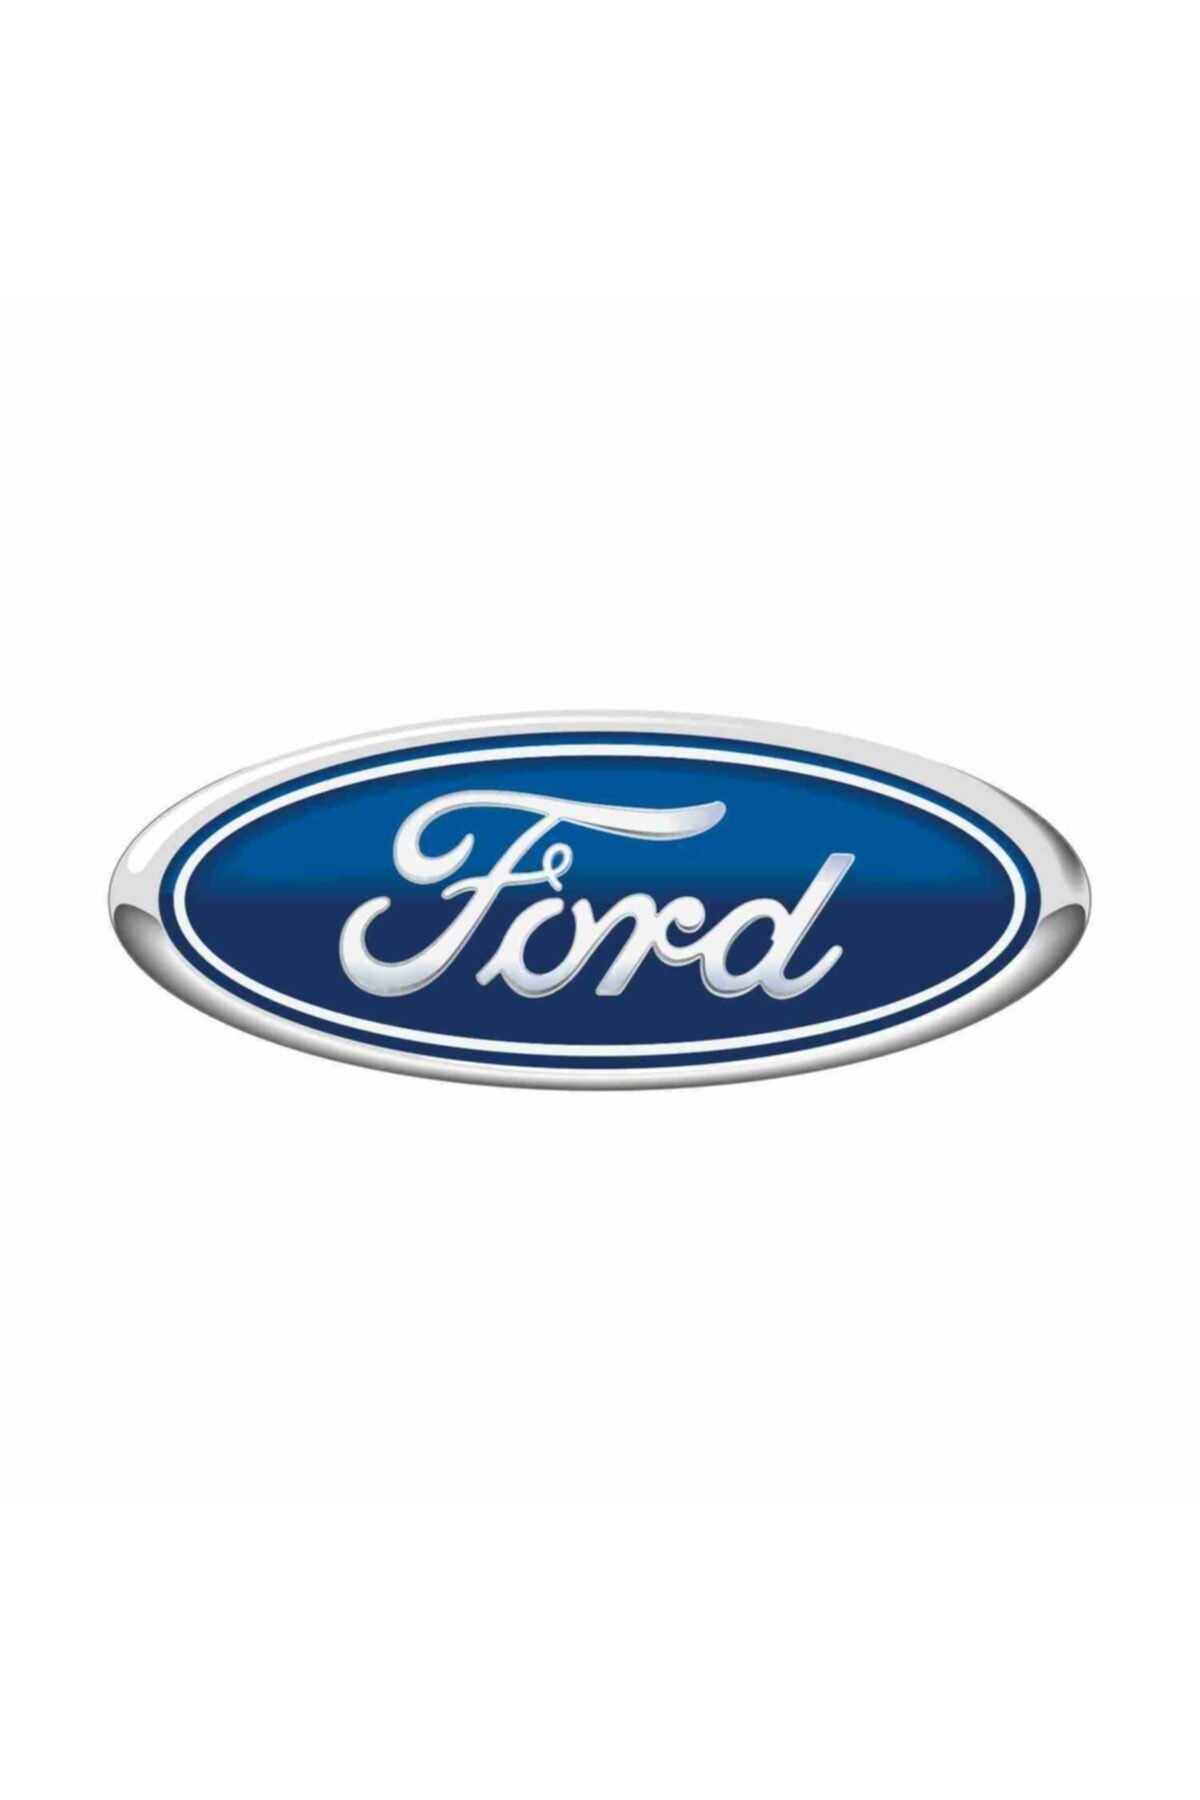 Sticker Atölyesi Ford Damla Sticker - D10007 (11 X 4 CM)